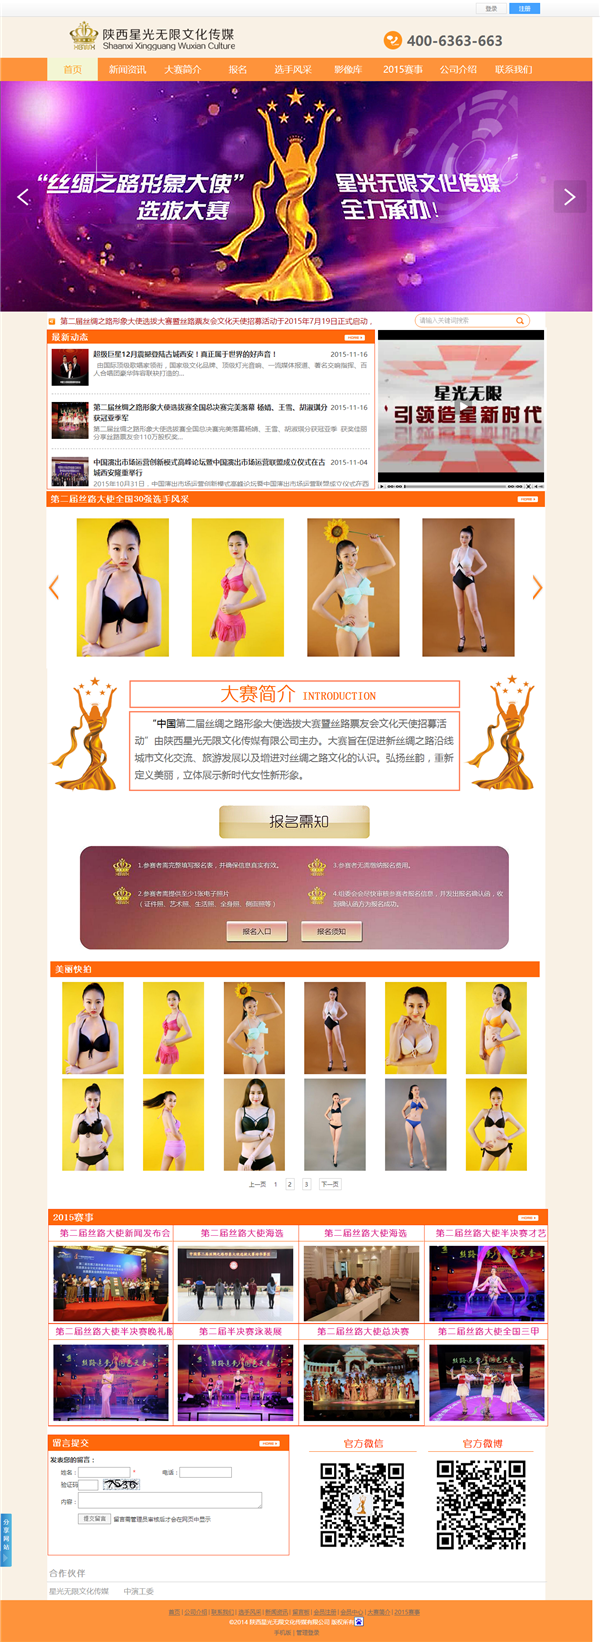 中国丝绸之路形象选拔赛官网